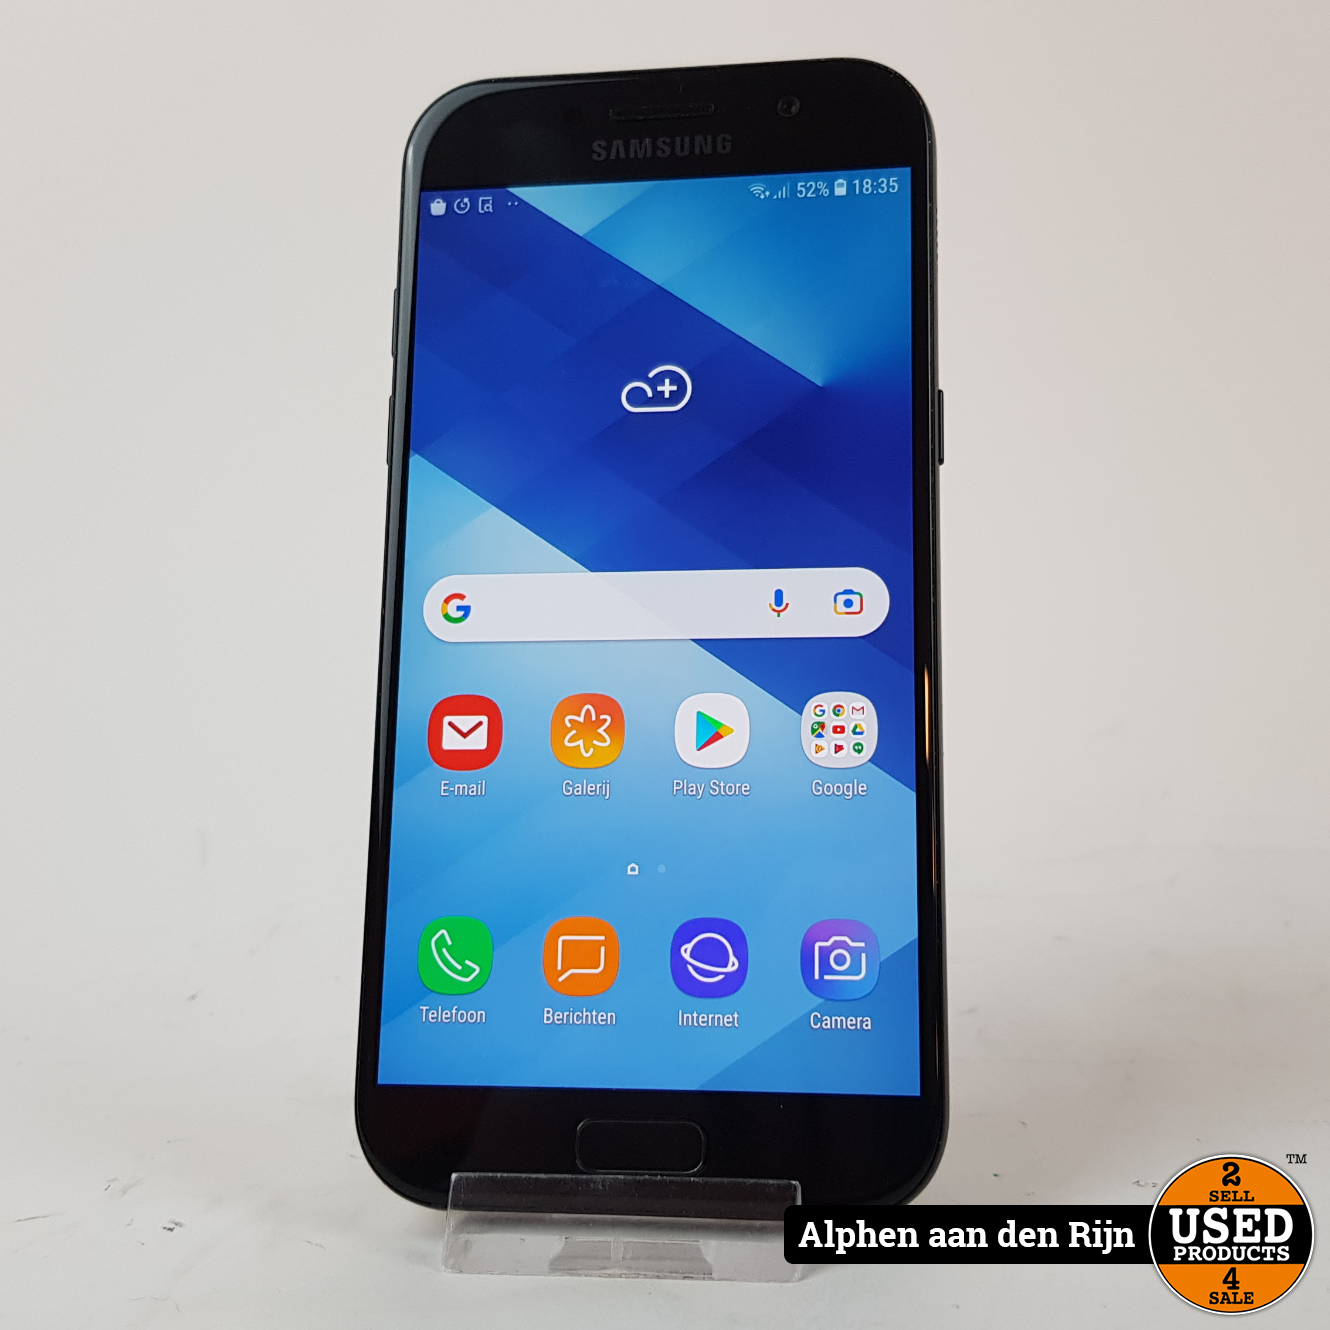 Namens dozijn betekenis Samsung Galaxy A5 2017 32gb || Android 8 - Used Products Alphen aan den Rijn